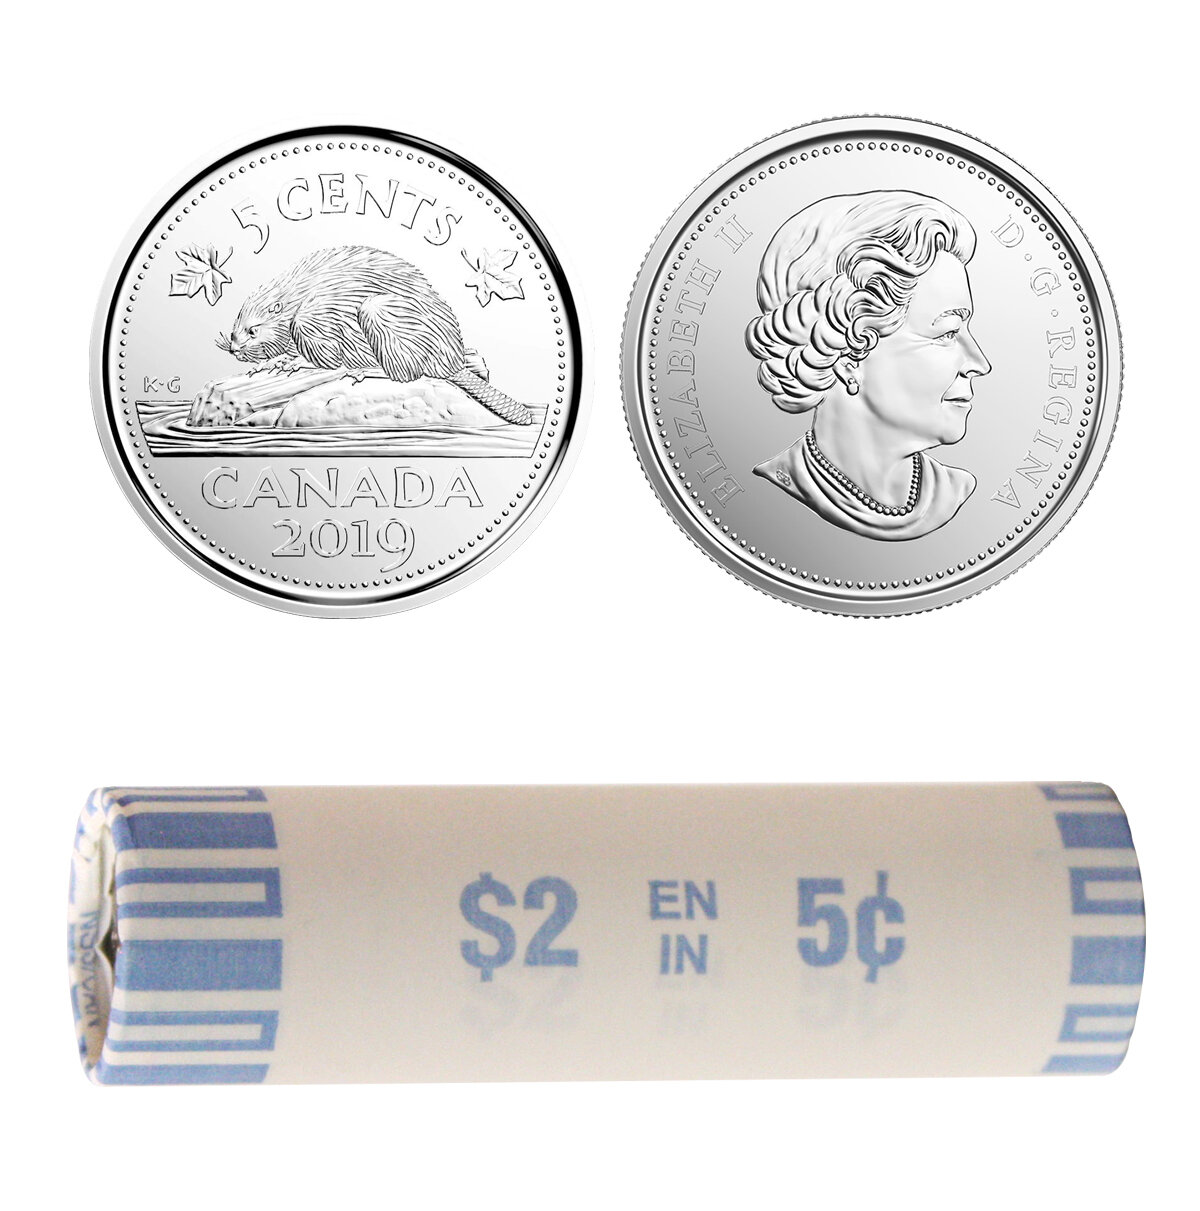 Canada. Elizabeth II. 2019. 5 Cents - a roll of 40 coins. Beaver. RCM logo. Nickel 4.54 g. UNC